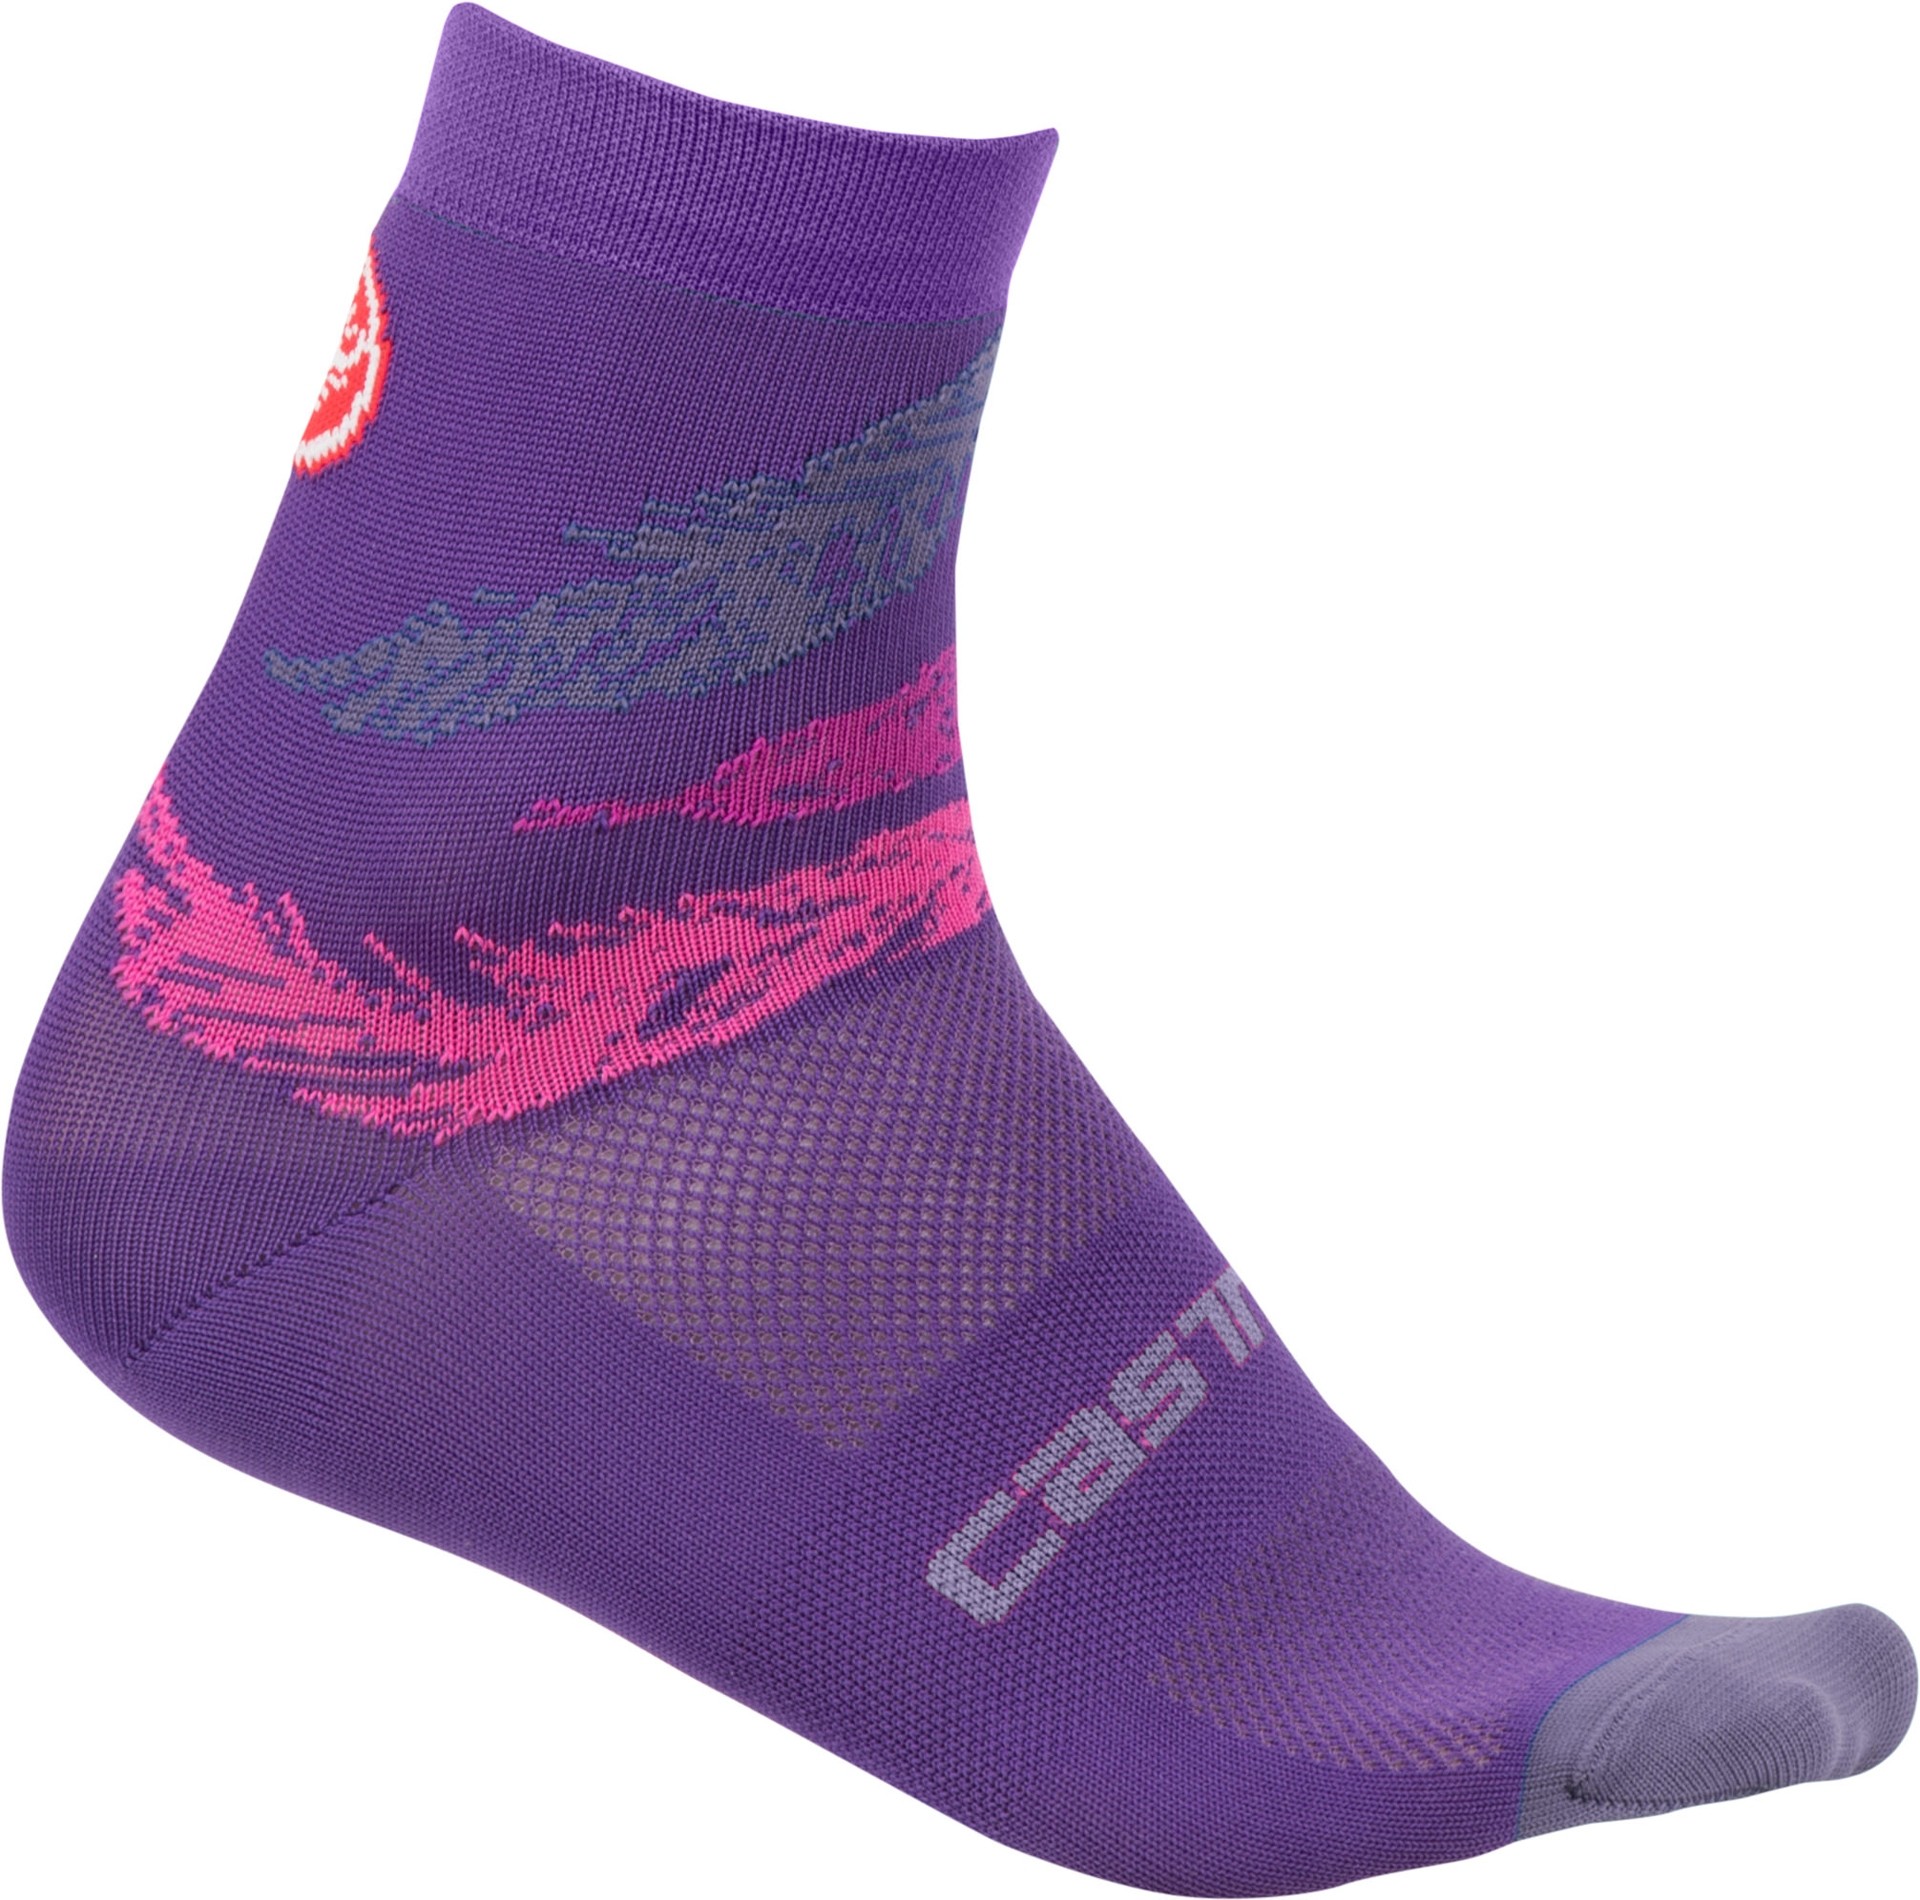 Castelli tr chaussettes de cyclisme femme piuma violet